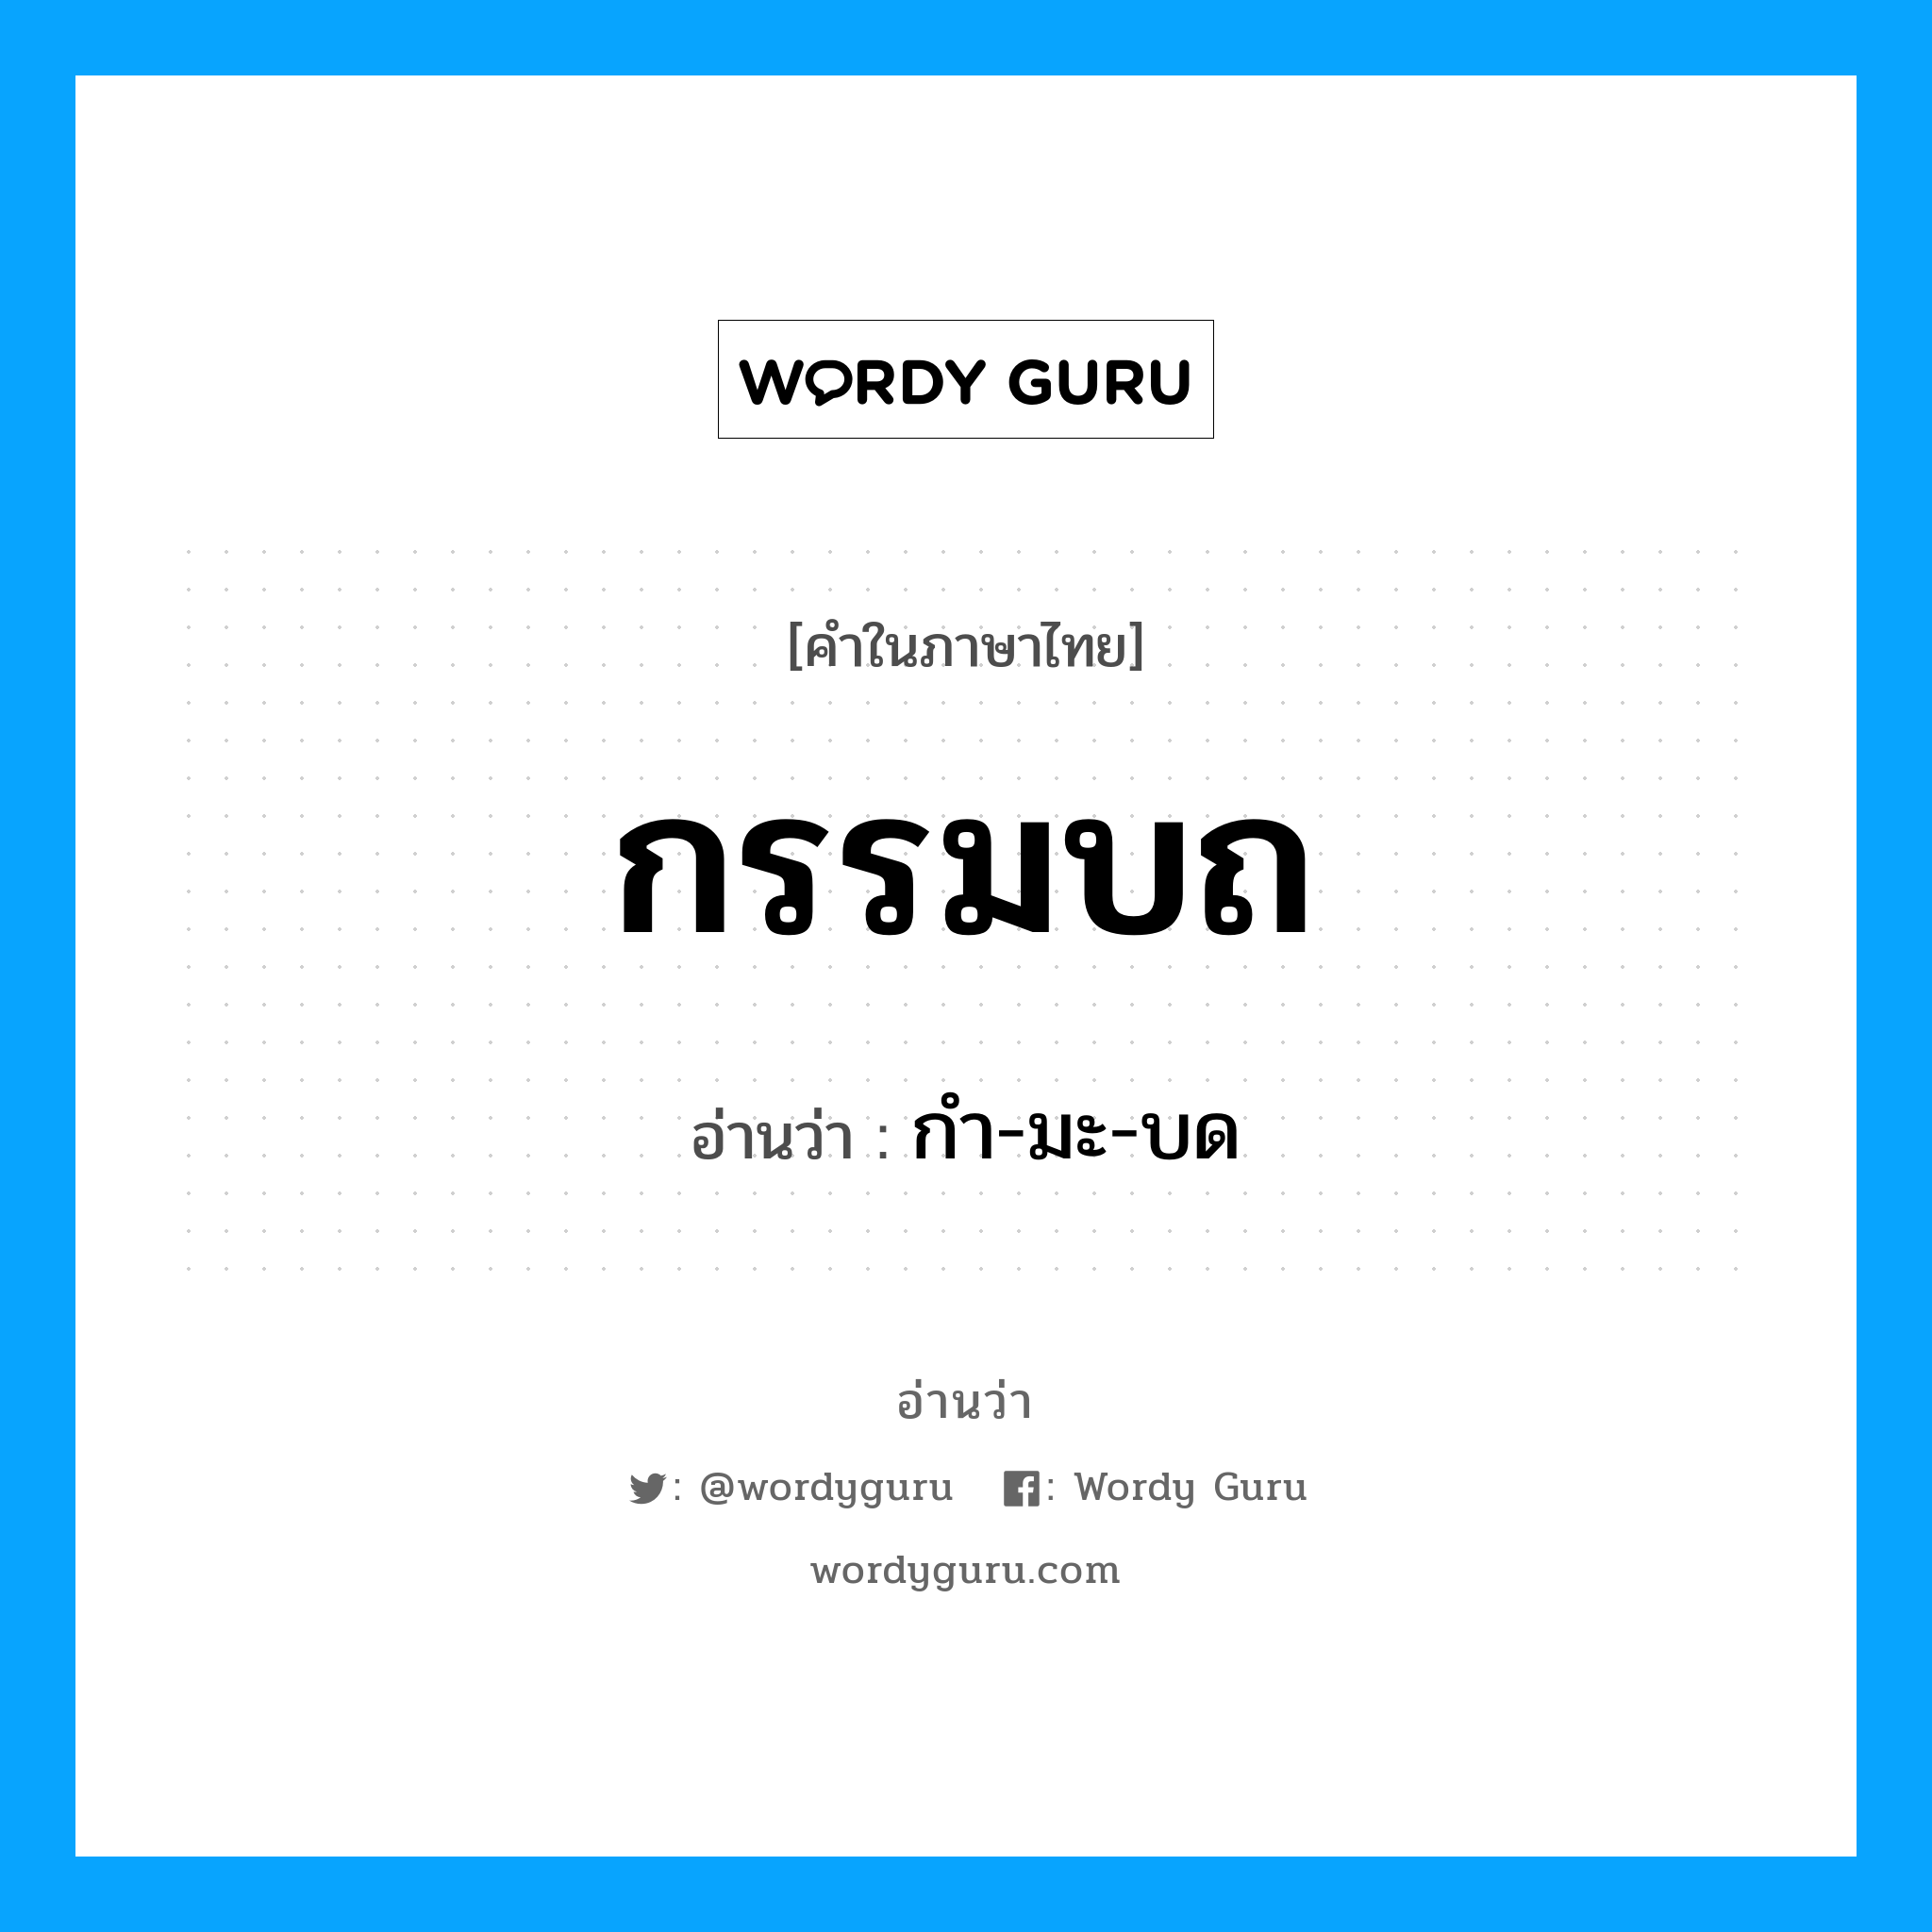 กำ-มะ-บด เป็นคำอ่านของคำไหน?, คำในภาษาไทย กำ-มะ-บด อ่านว่า กรรมบถ